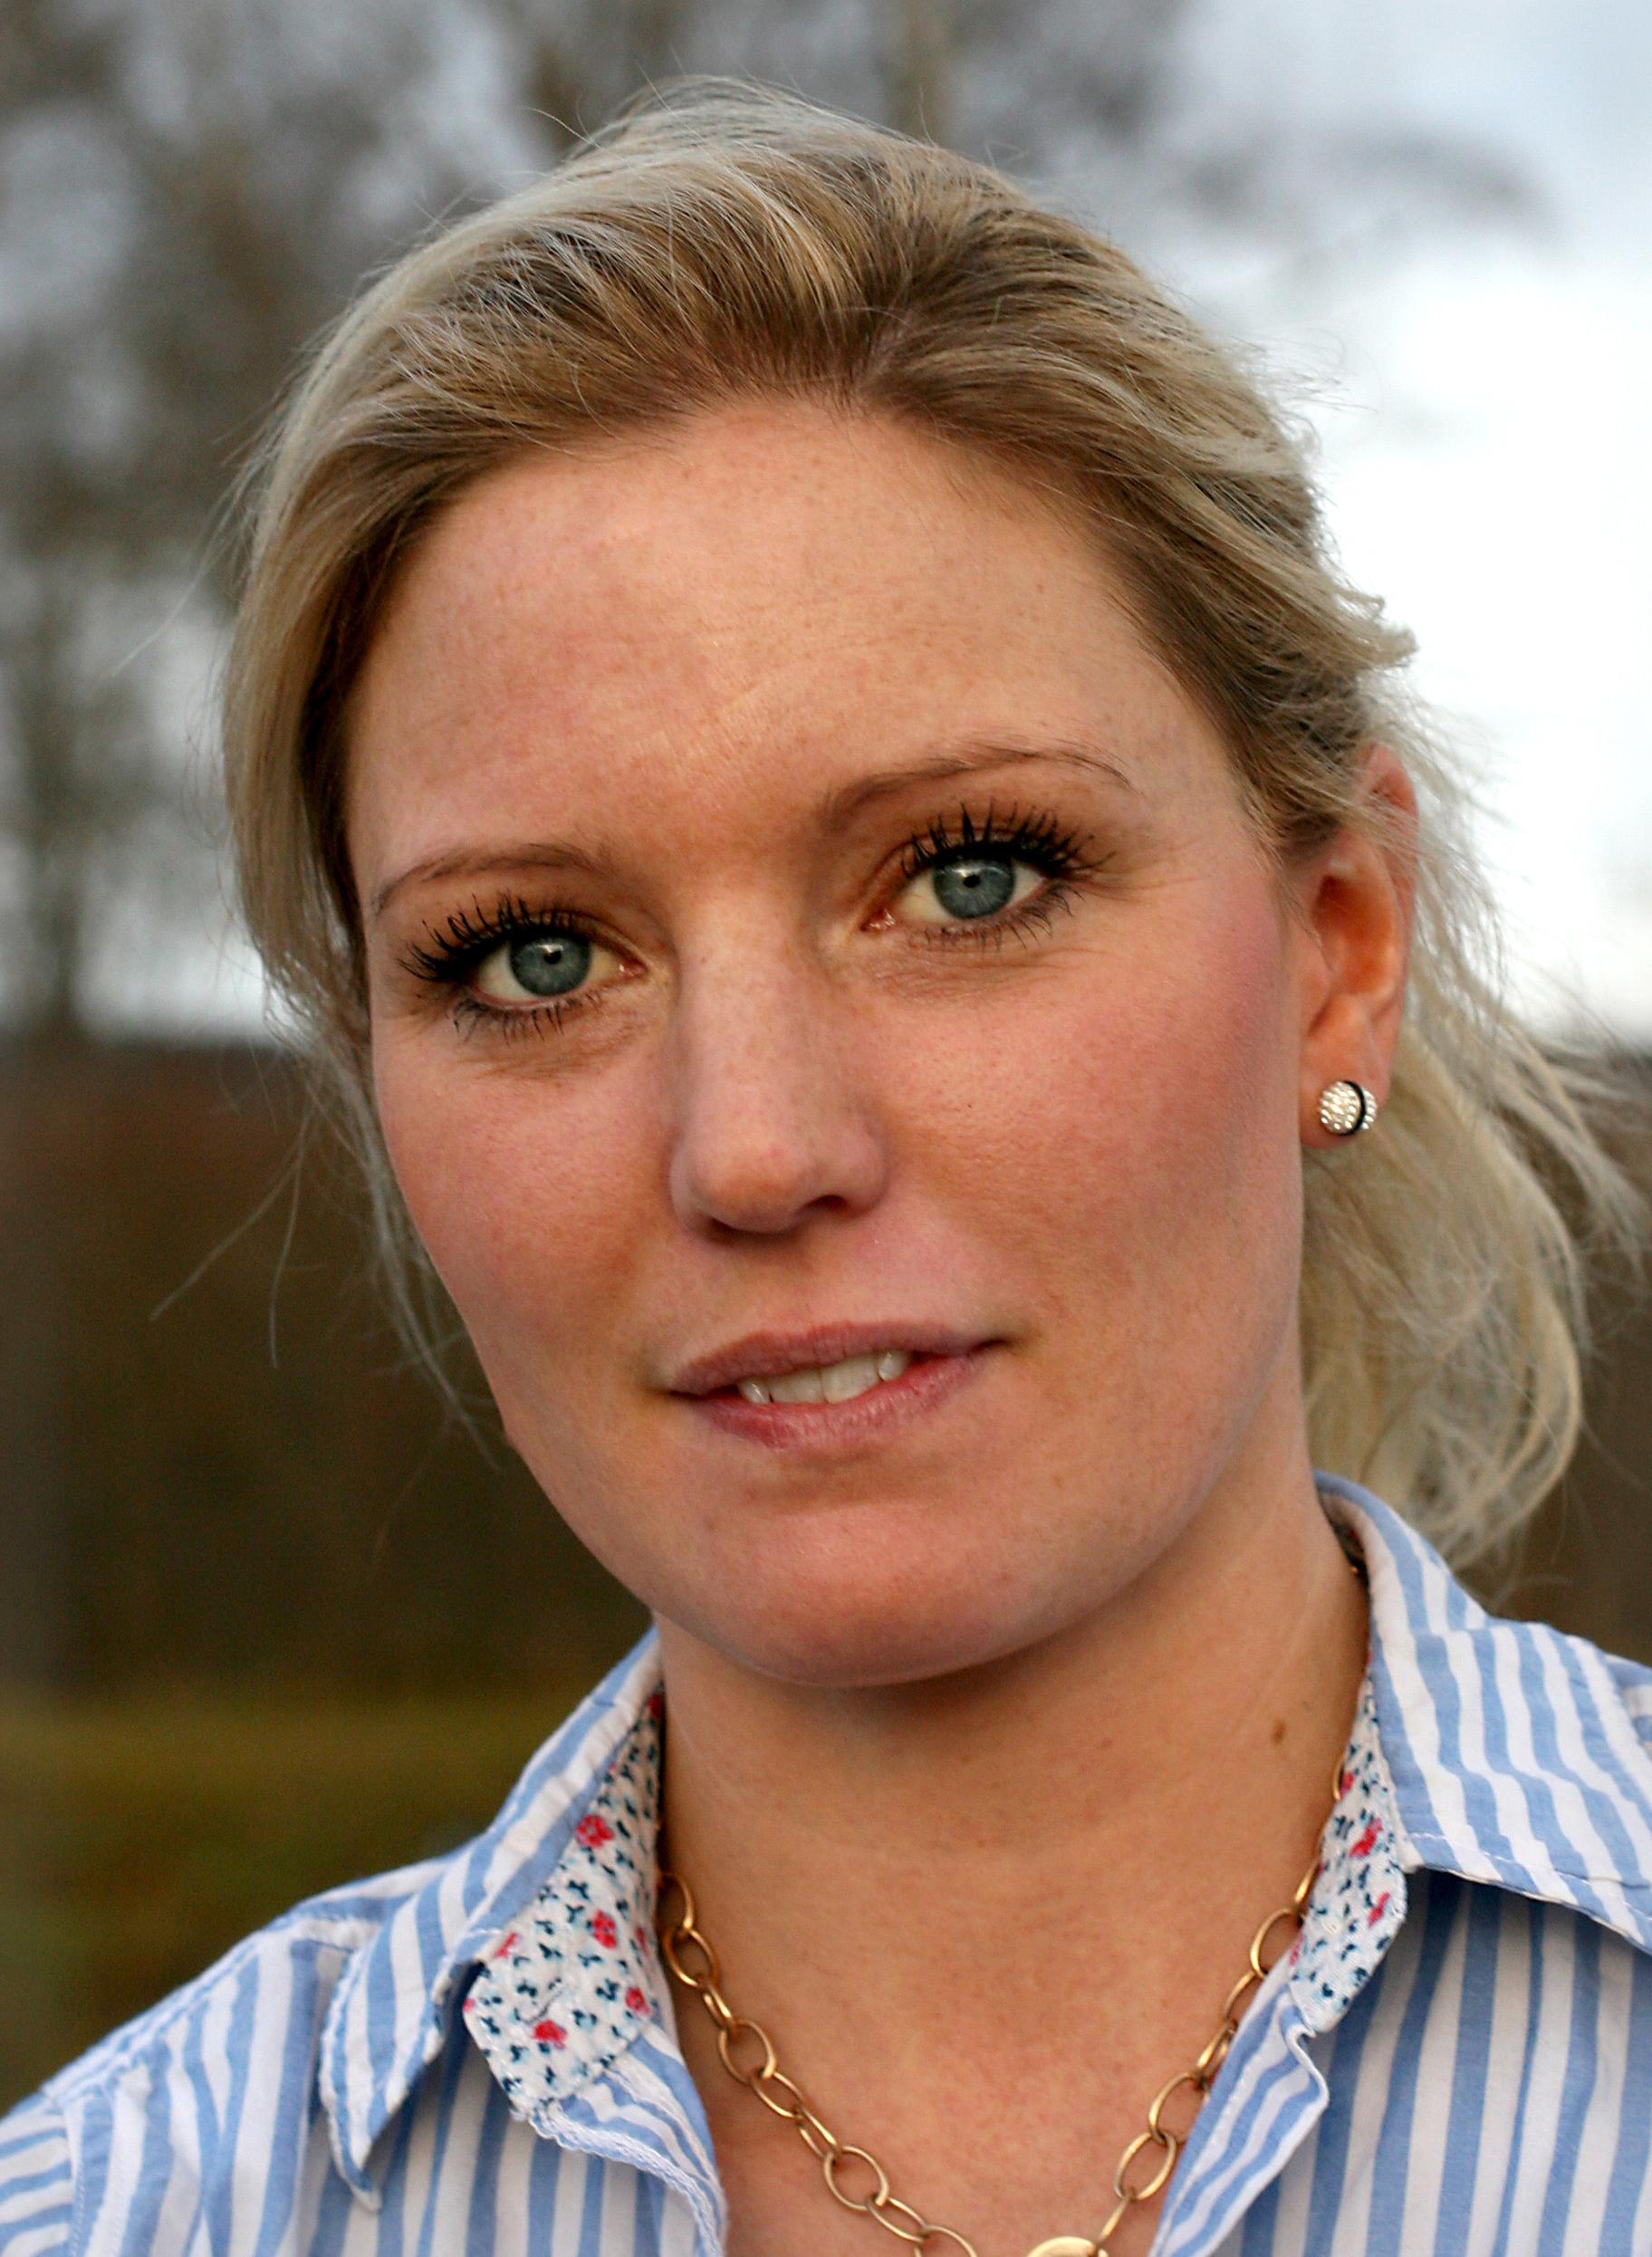 Sofia Aronsson